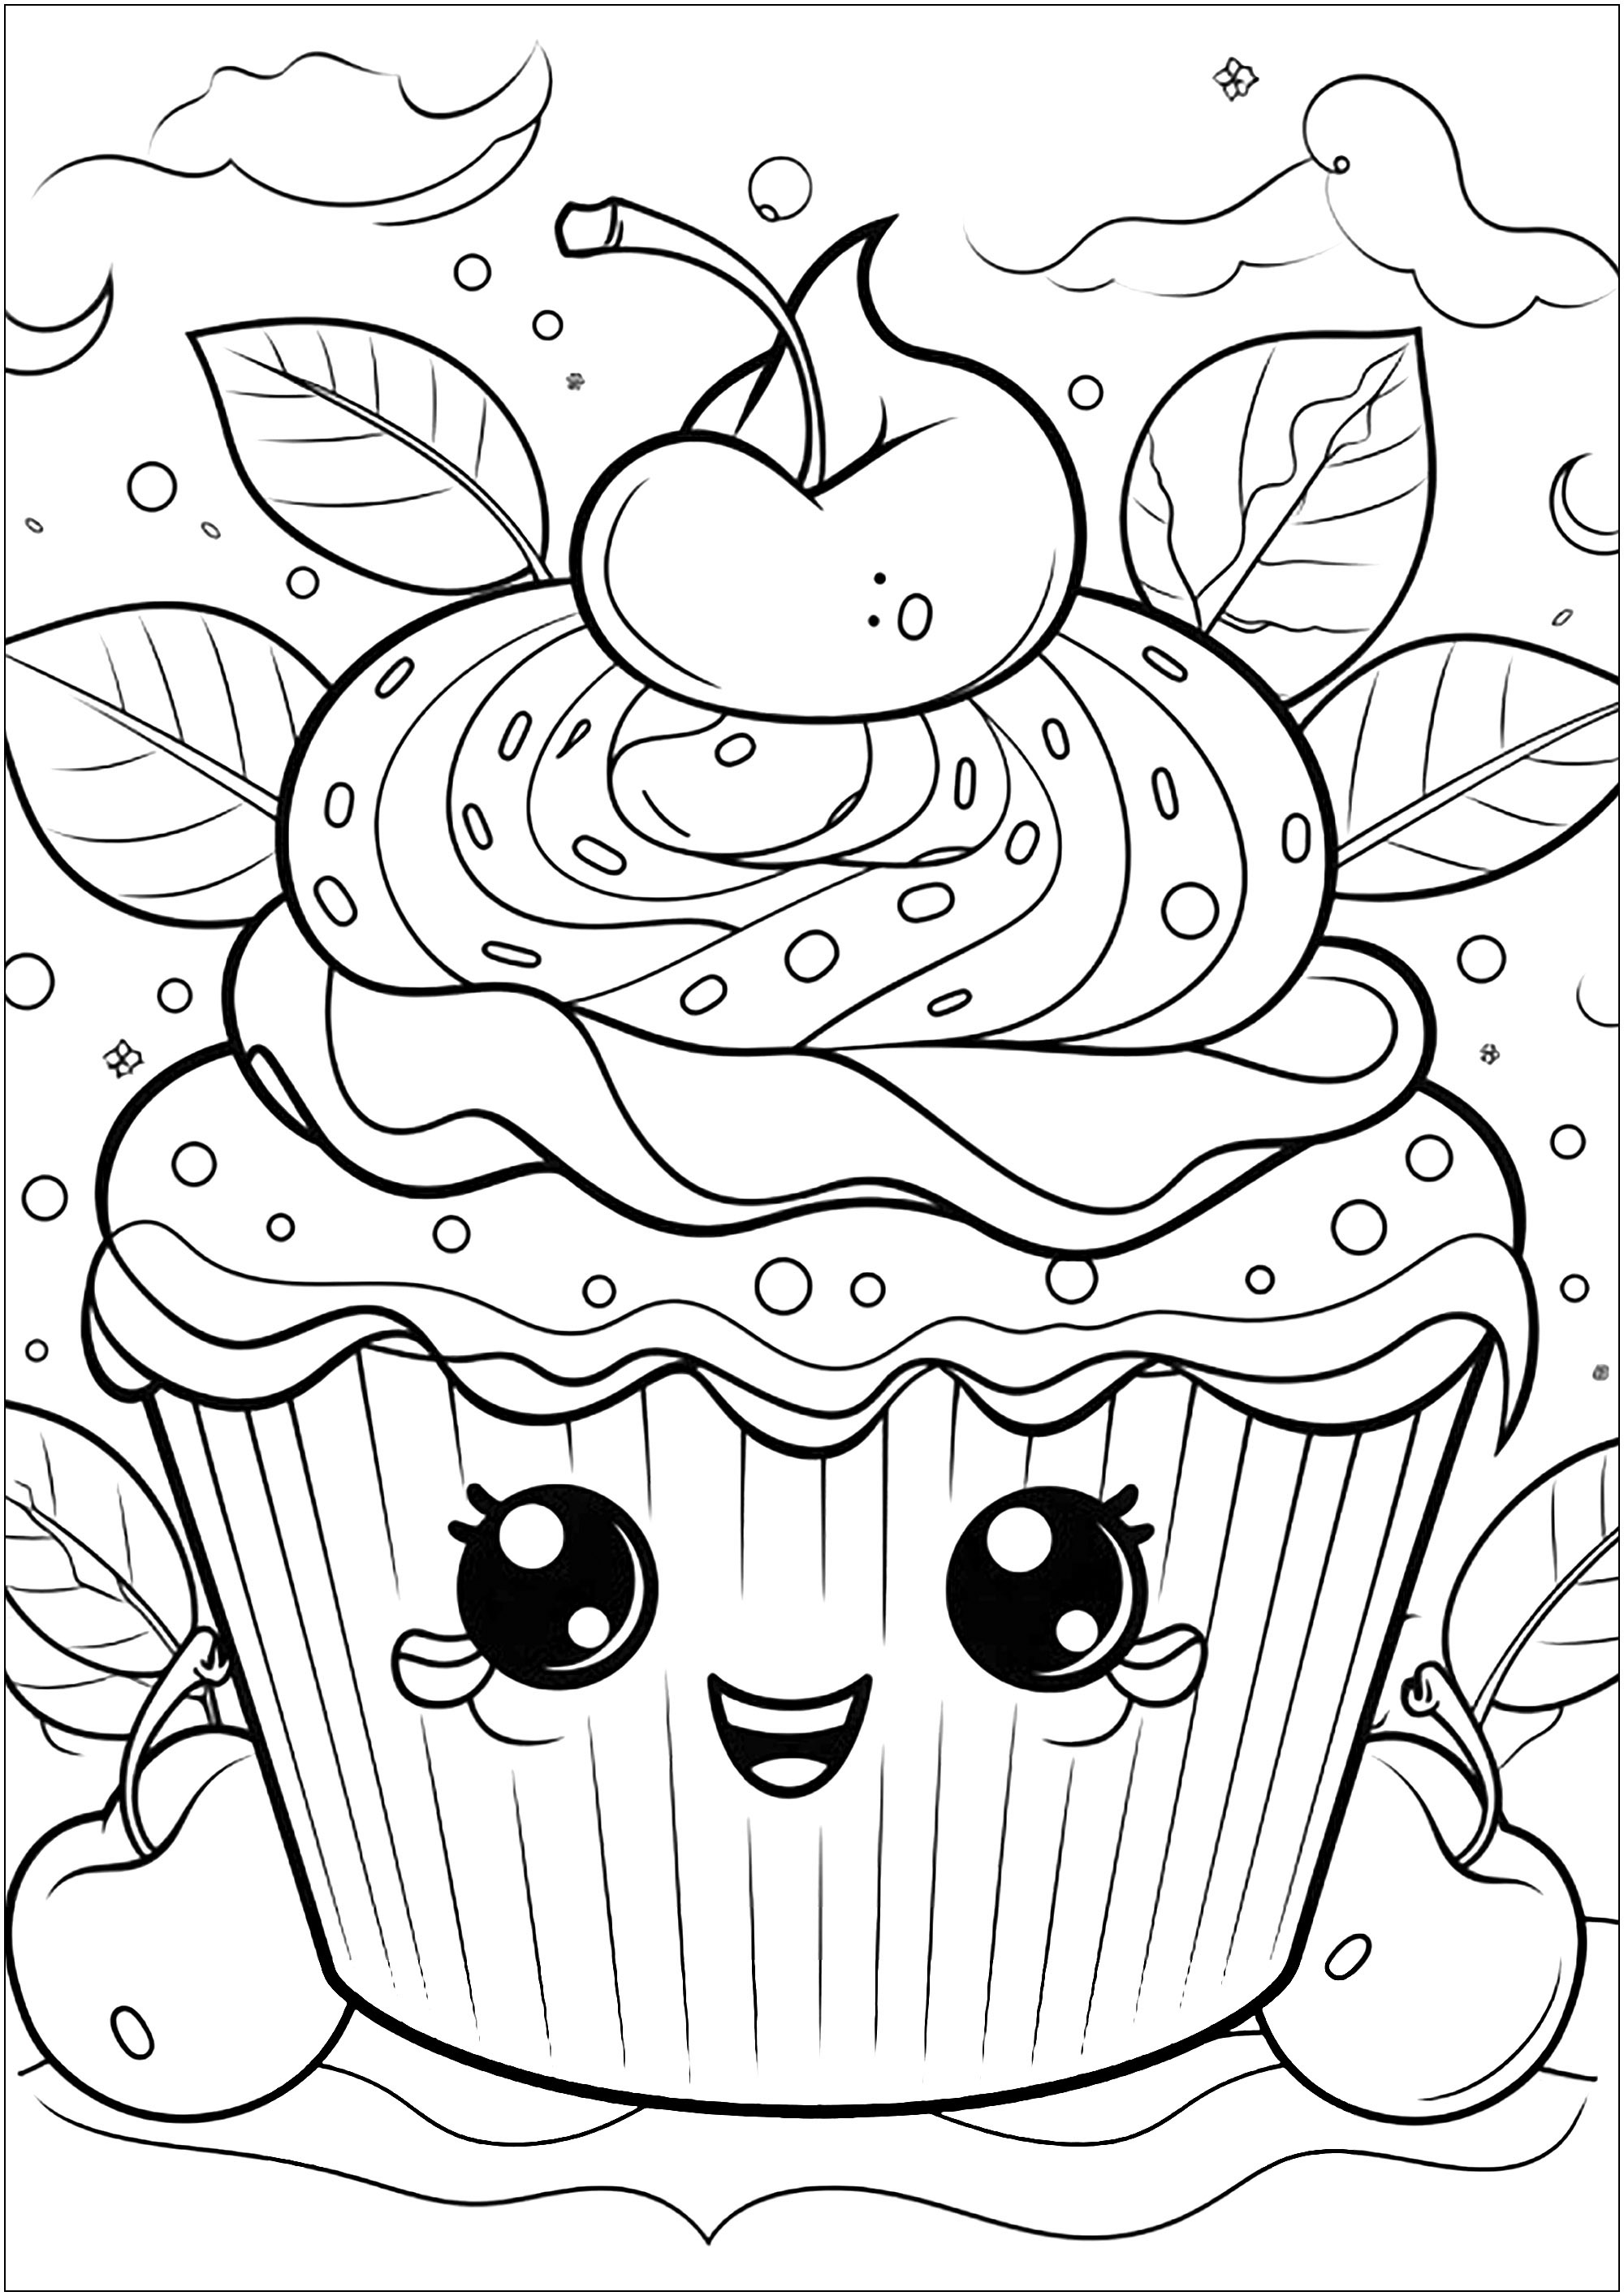 Cupcake de crema de cerezas. Un montón de detalles en esta página para colorear de cupcakes